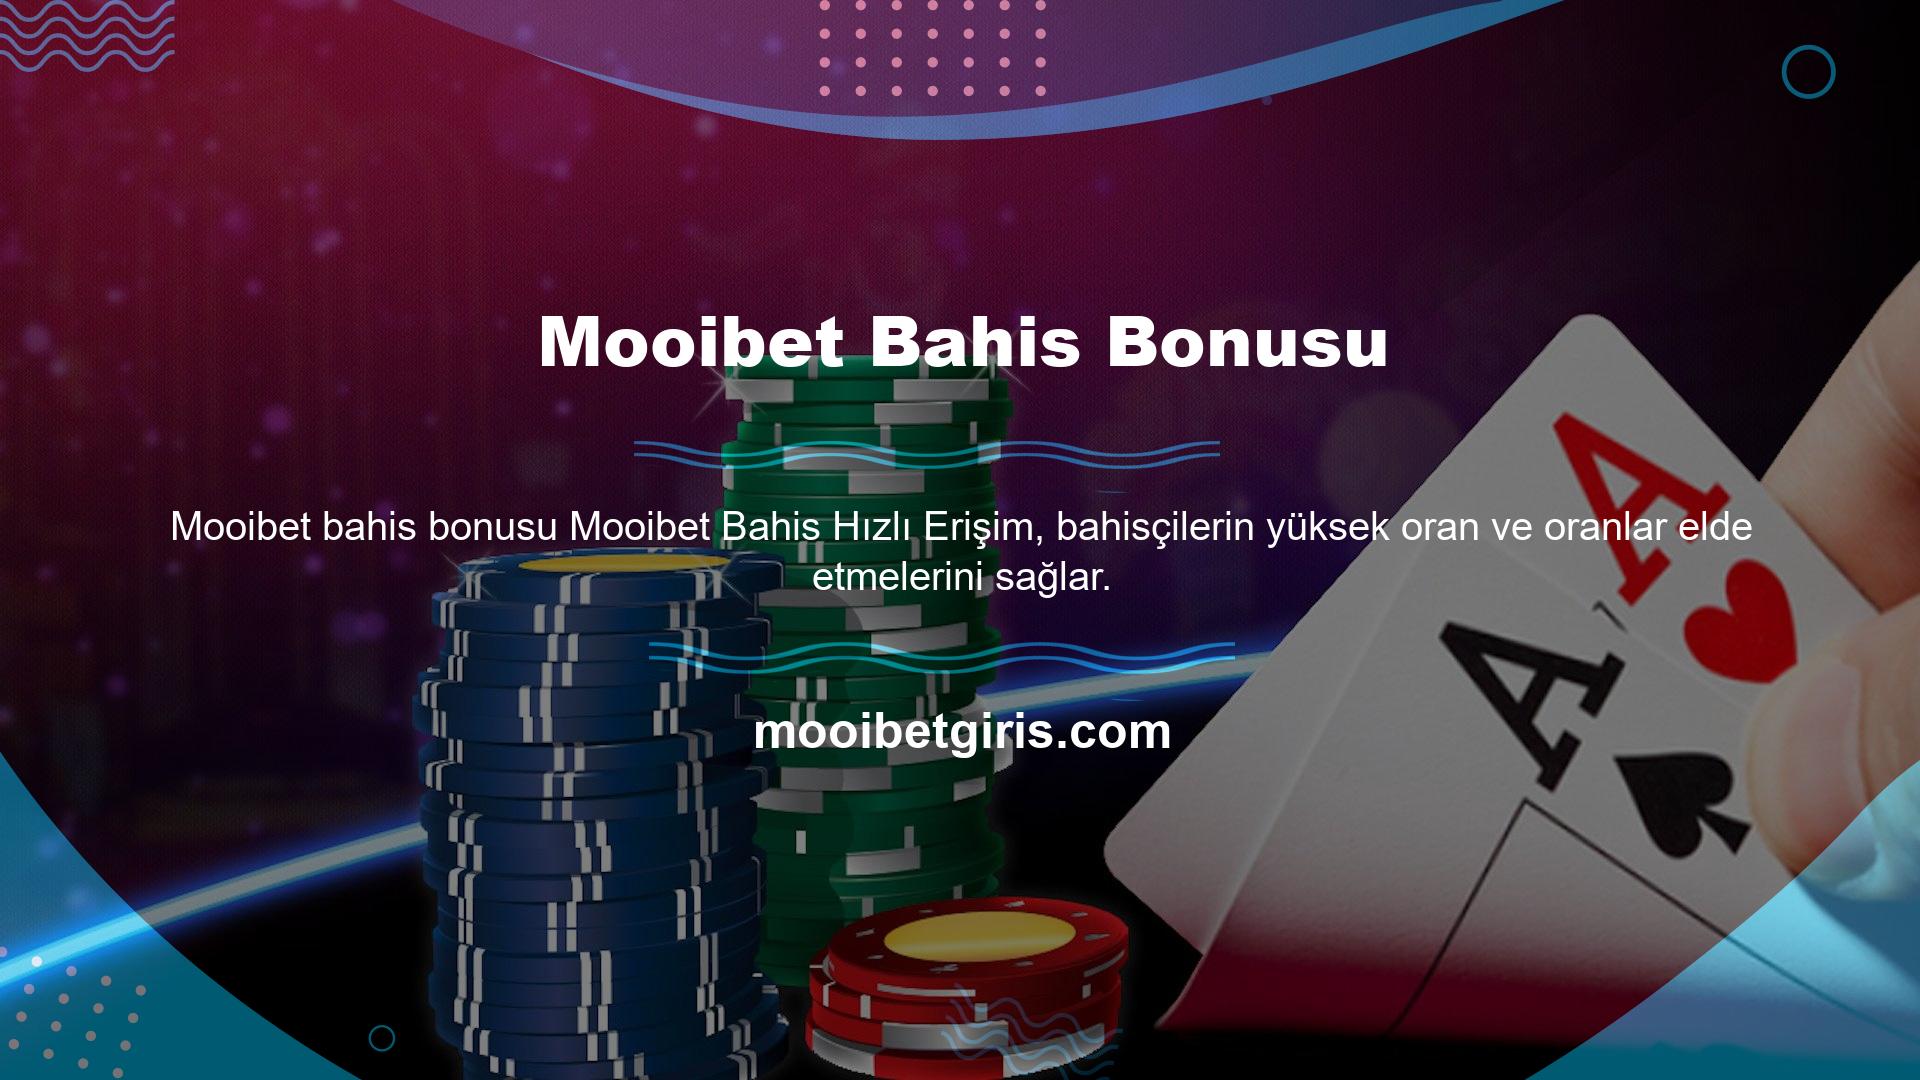 Mooibet Bahis Bonusu